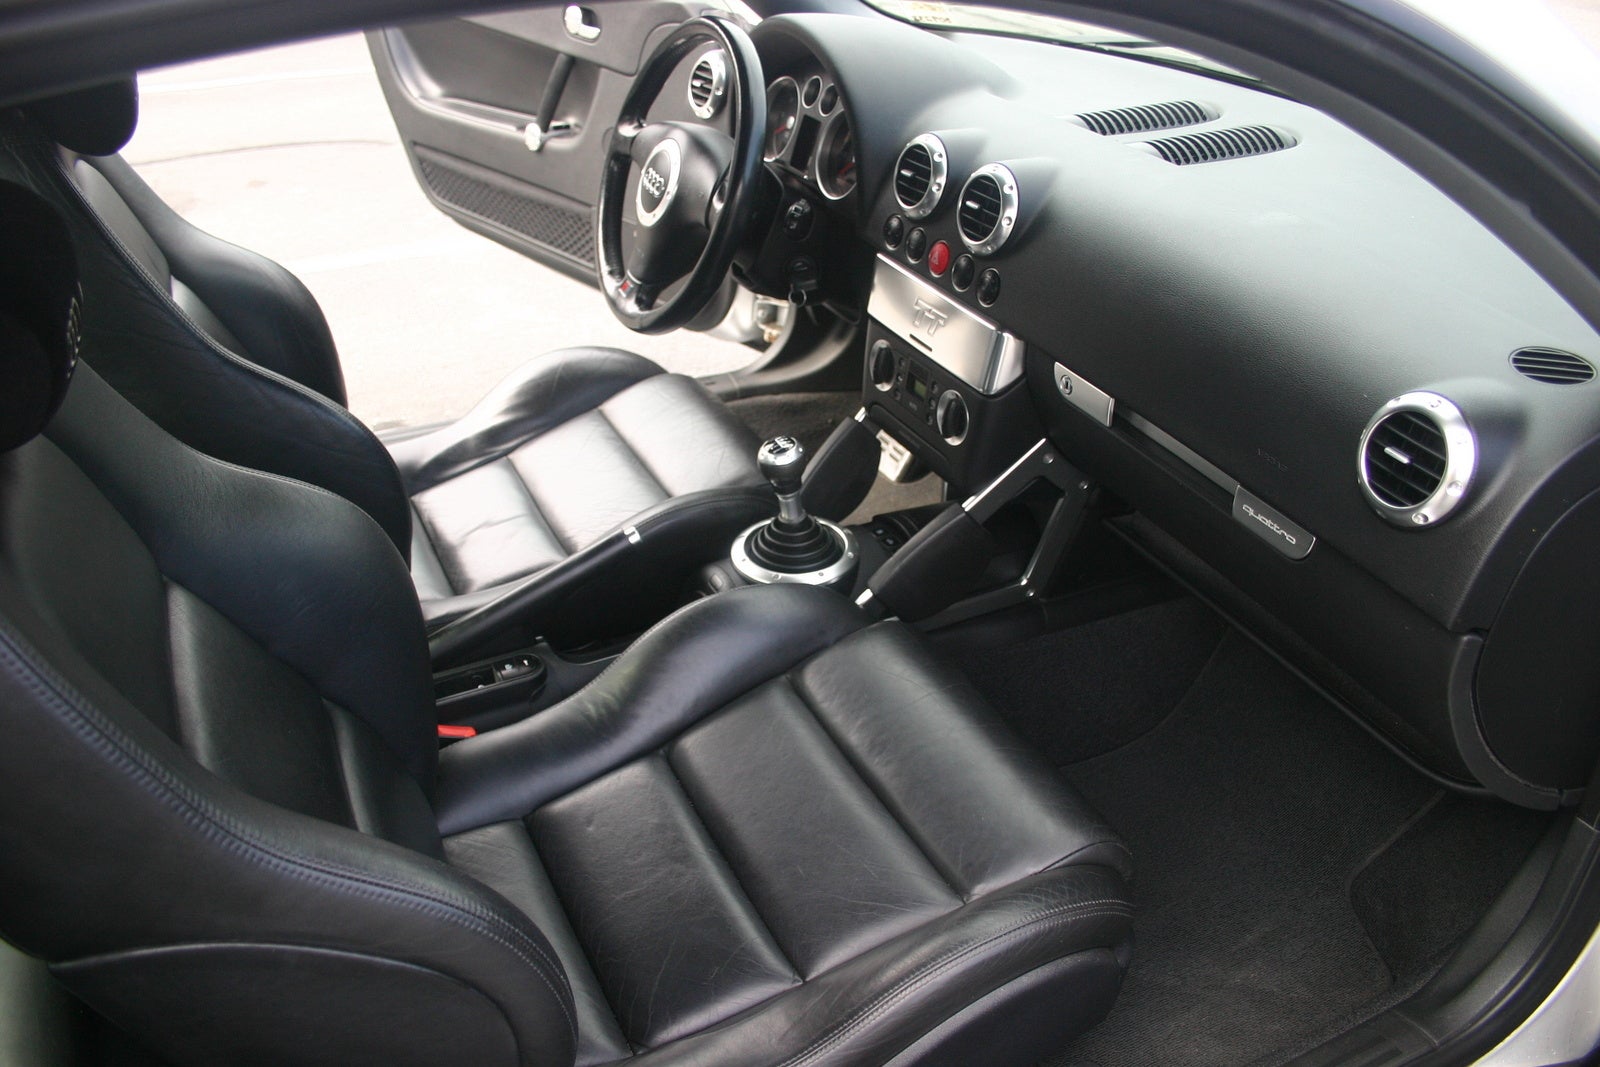 2001 Audi TT Quattro Coupe, Picture of 2001 Audi TT Coupe Quattro, interior